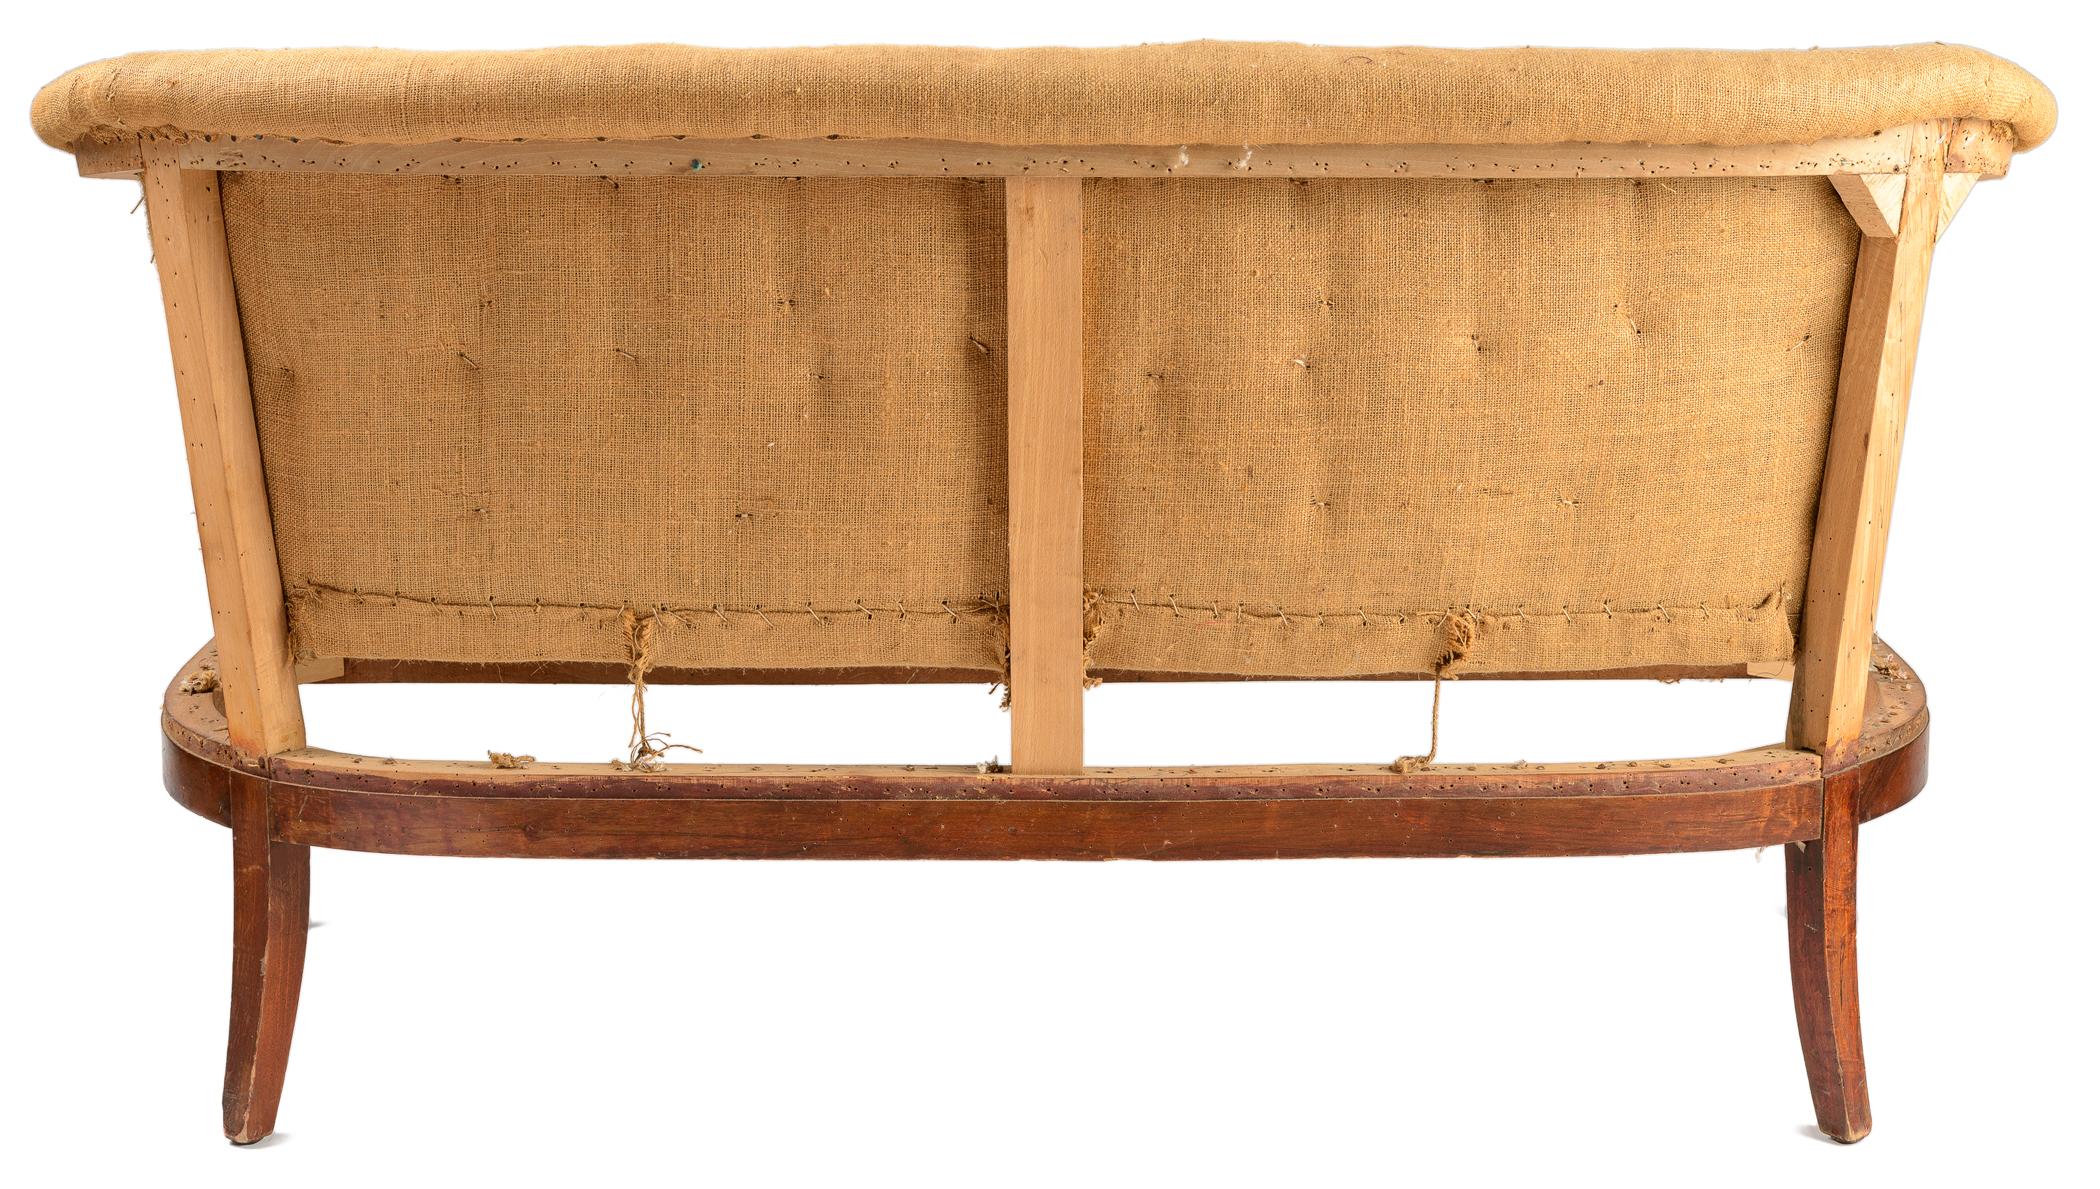 Charmantes französisches Art-Déco-Sofa mit originaler Rosshaar-Rückenkonstruktion. Die Beine und Arme haben feine kontrastierende Einlagen. Die Arme sind mit einer sanften Volutenkappe verziert. Die Vorderbeine sind verjüngt und die Hinterbeine